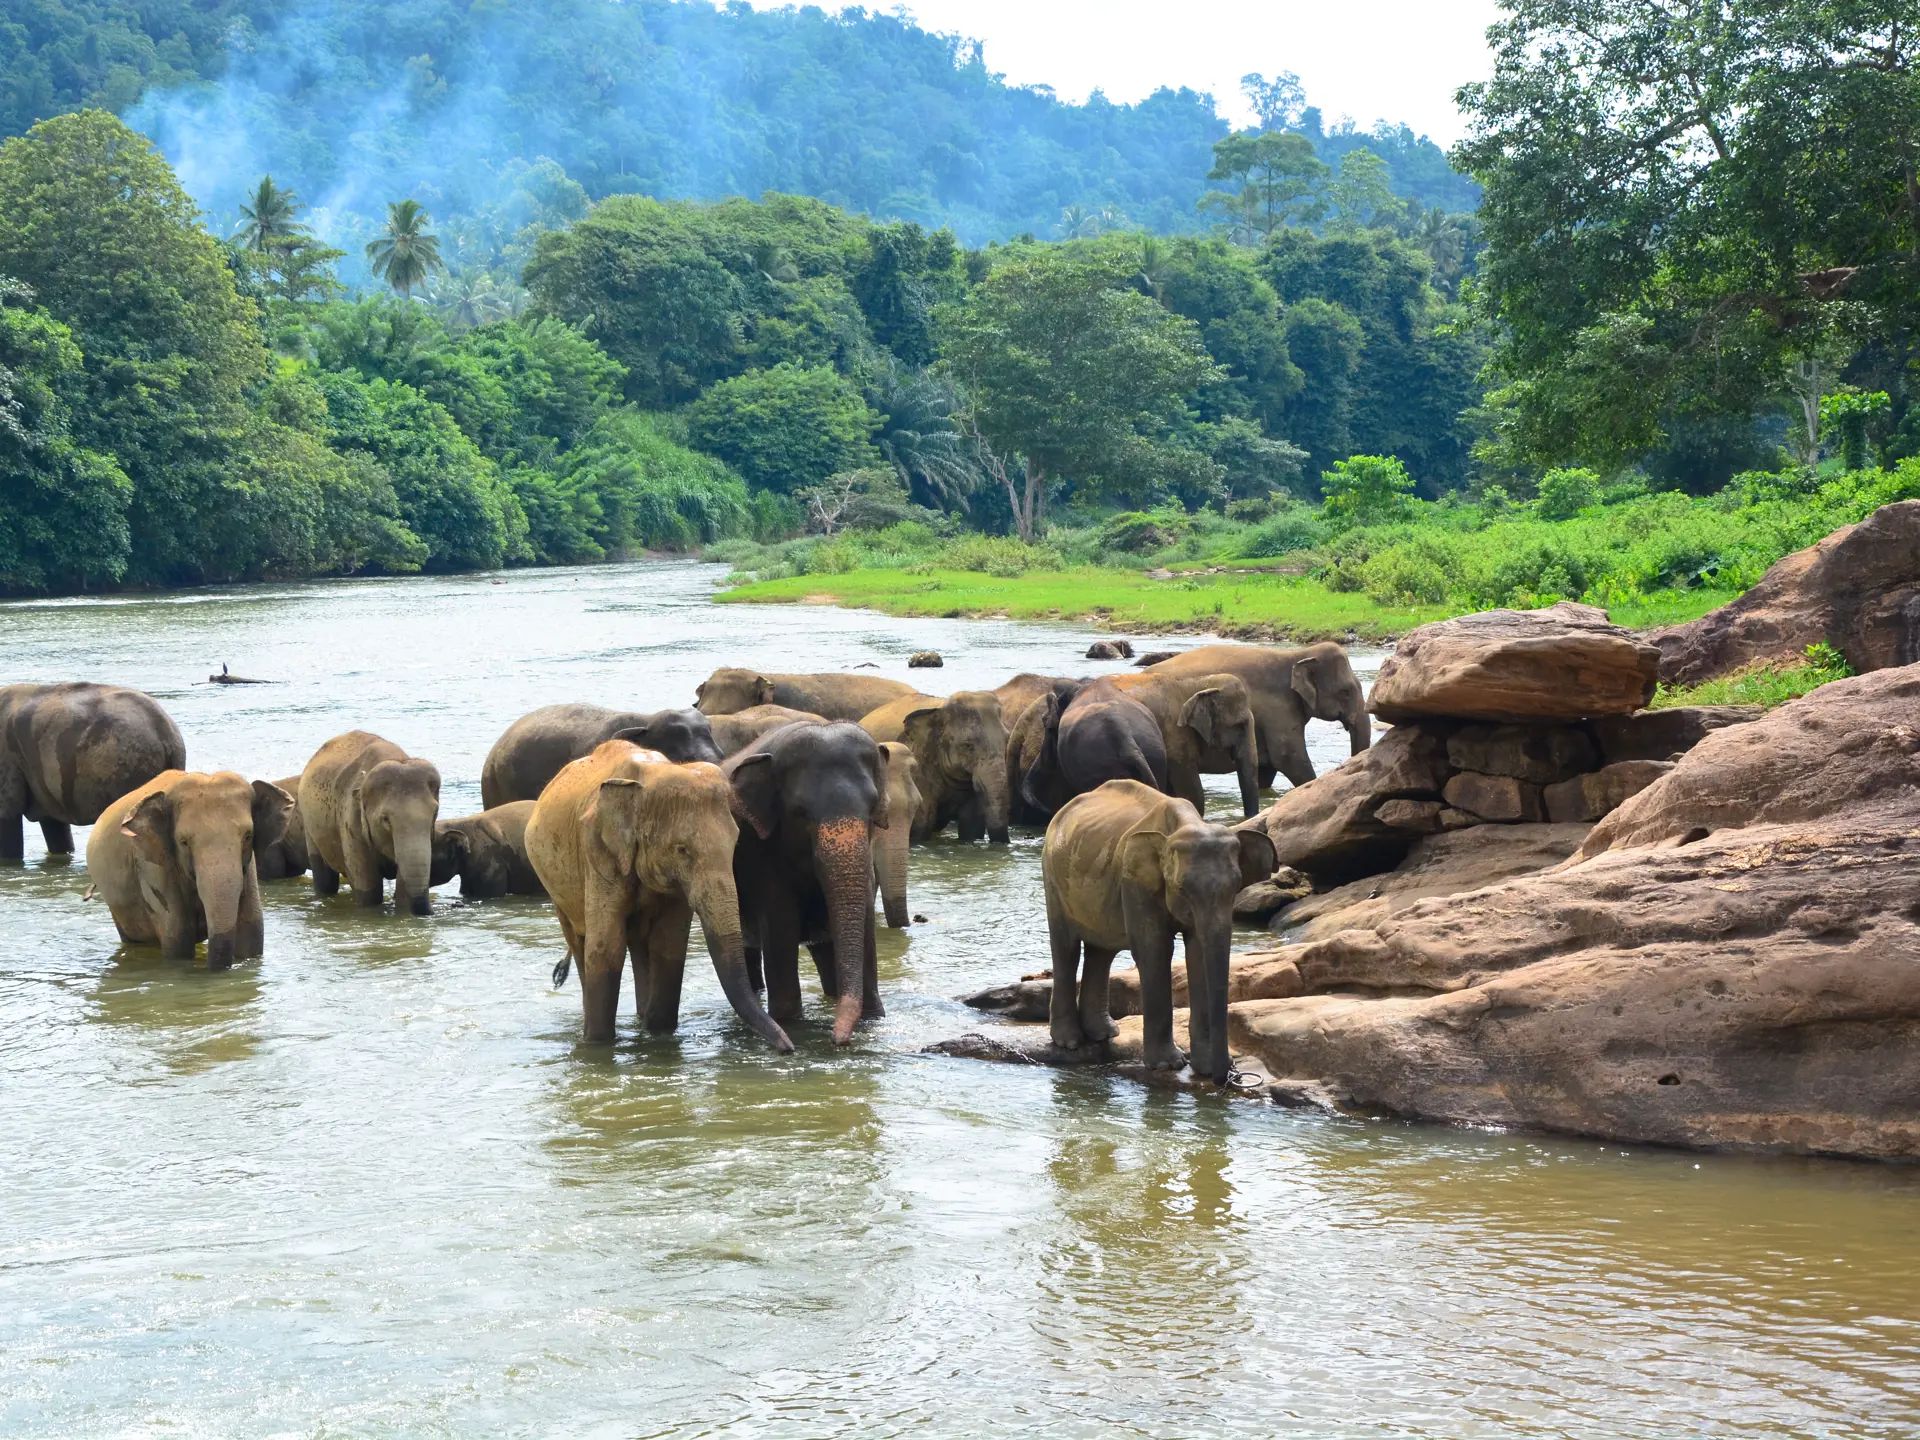 Elephants in jungle_148263590.jpg